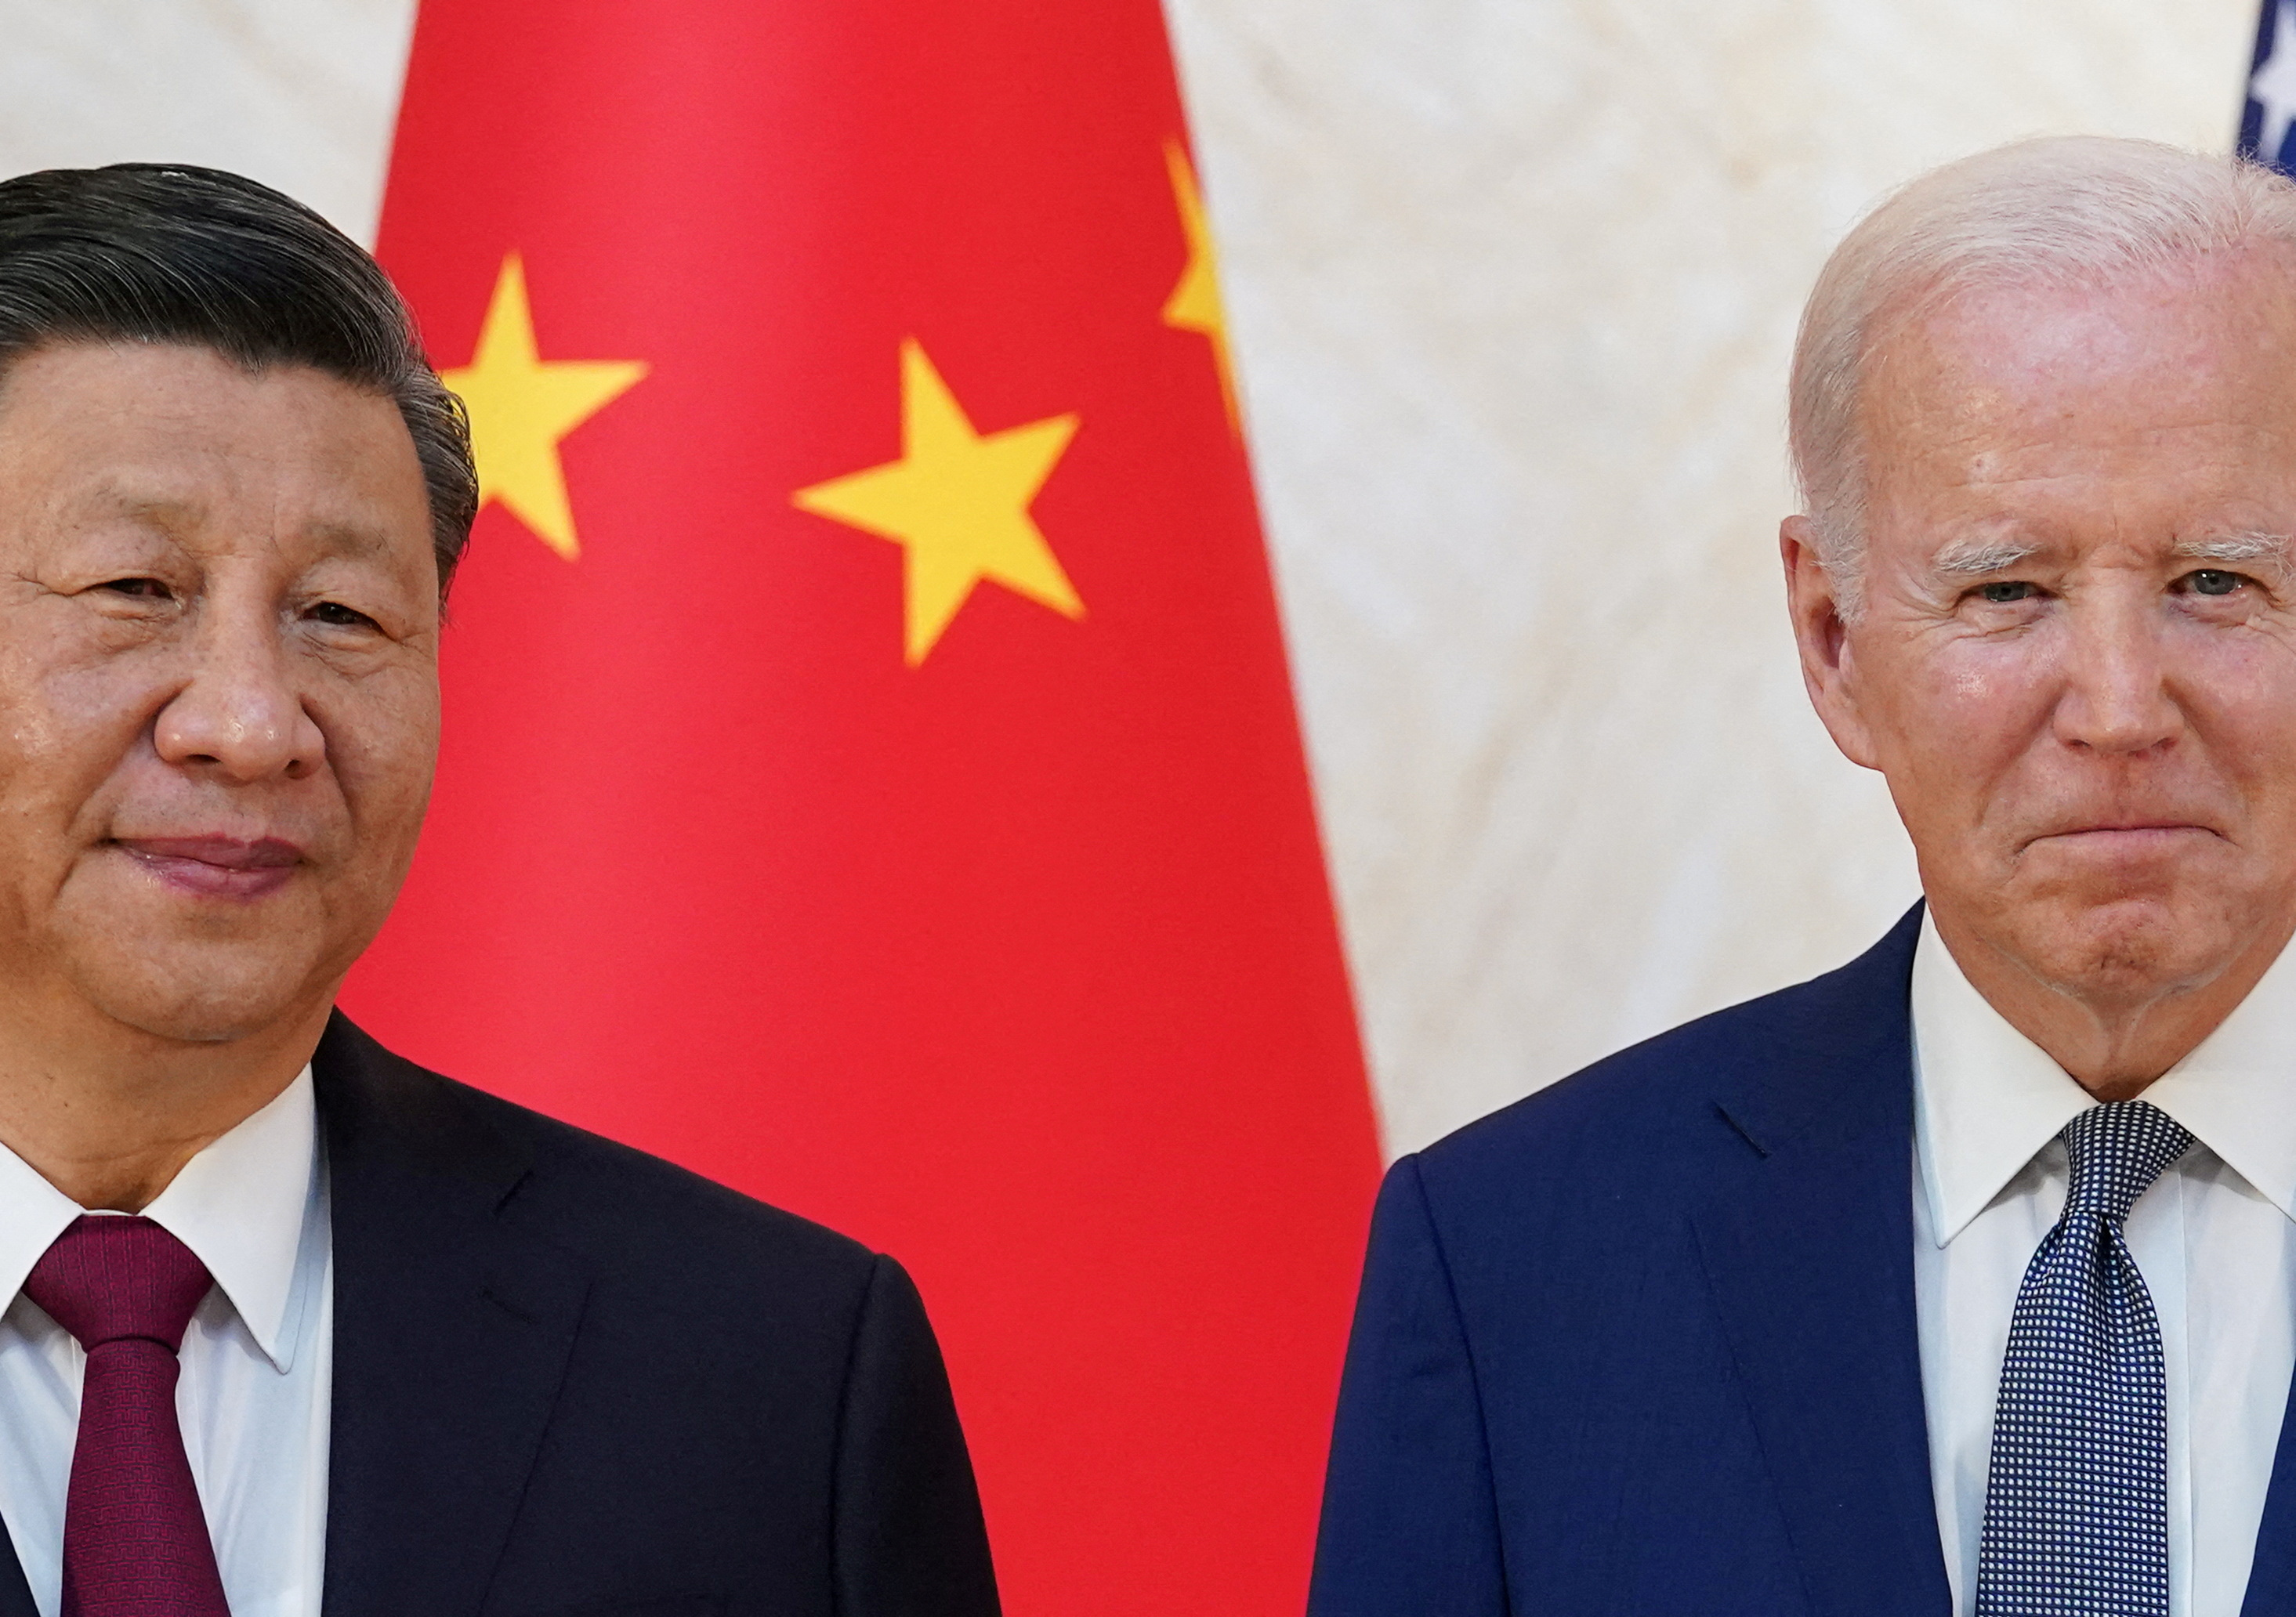 La Chine fait un pas vers les Etats-Unis et se dit prête à « renforcer la communication et le dialogue » avec Washington